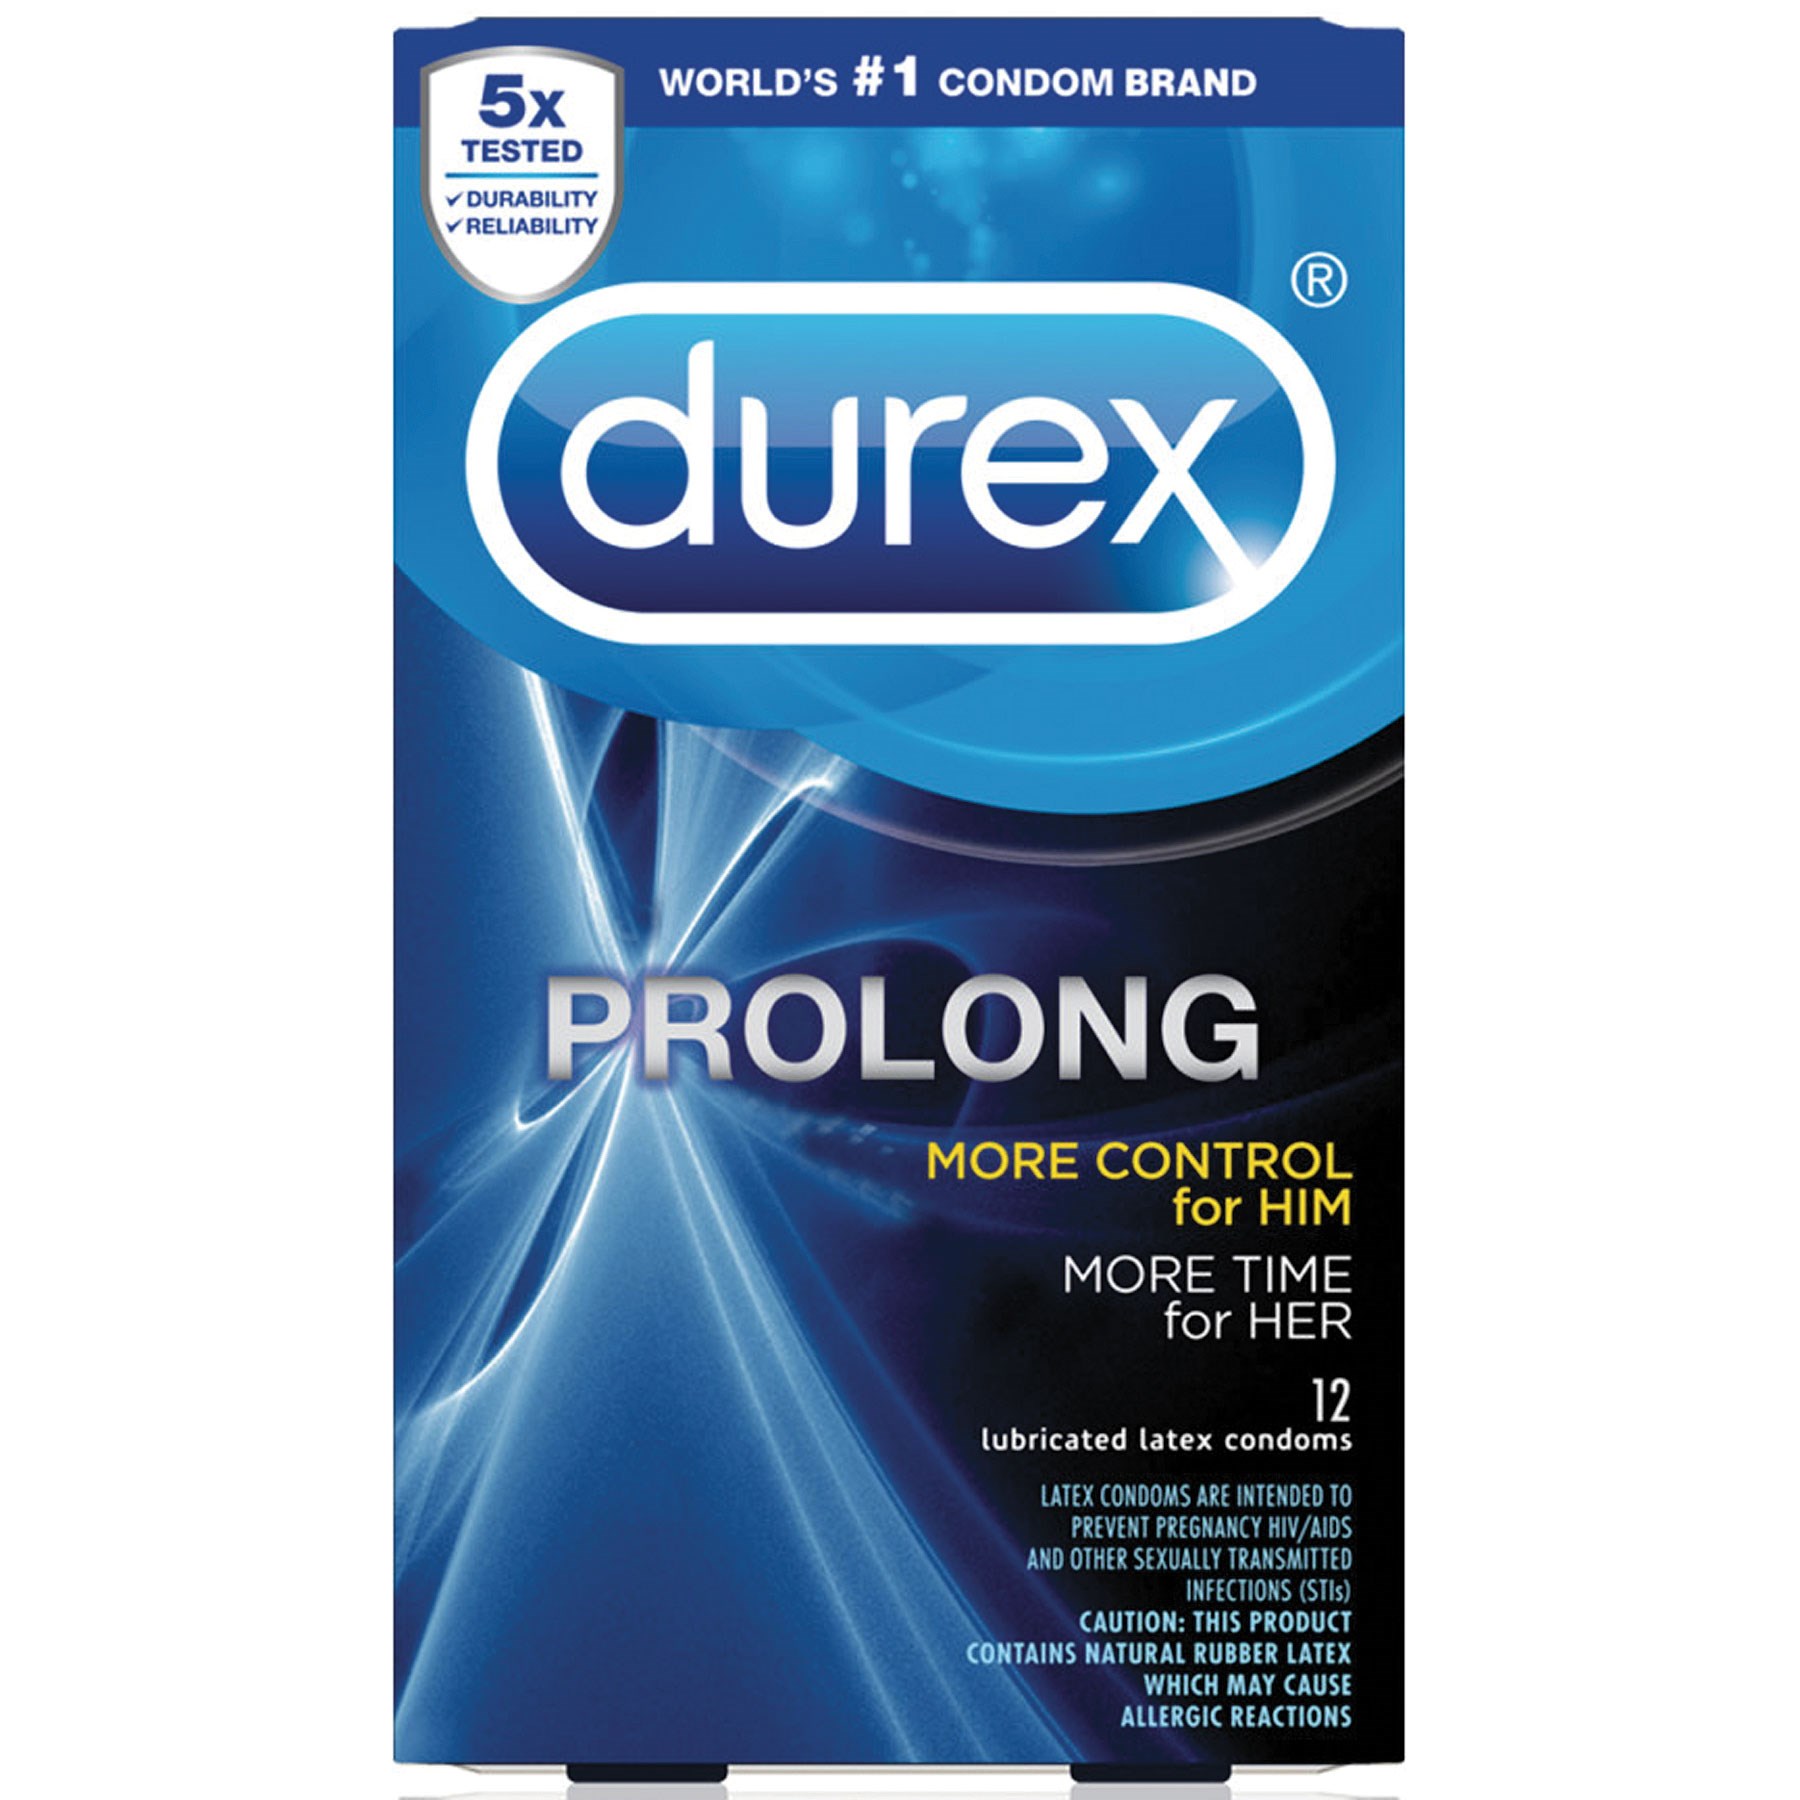 Durex Prolong Condom box